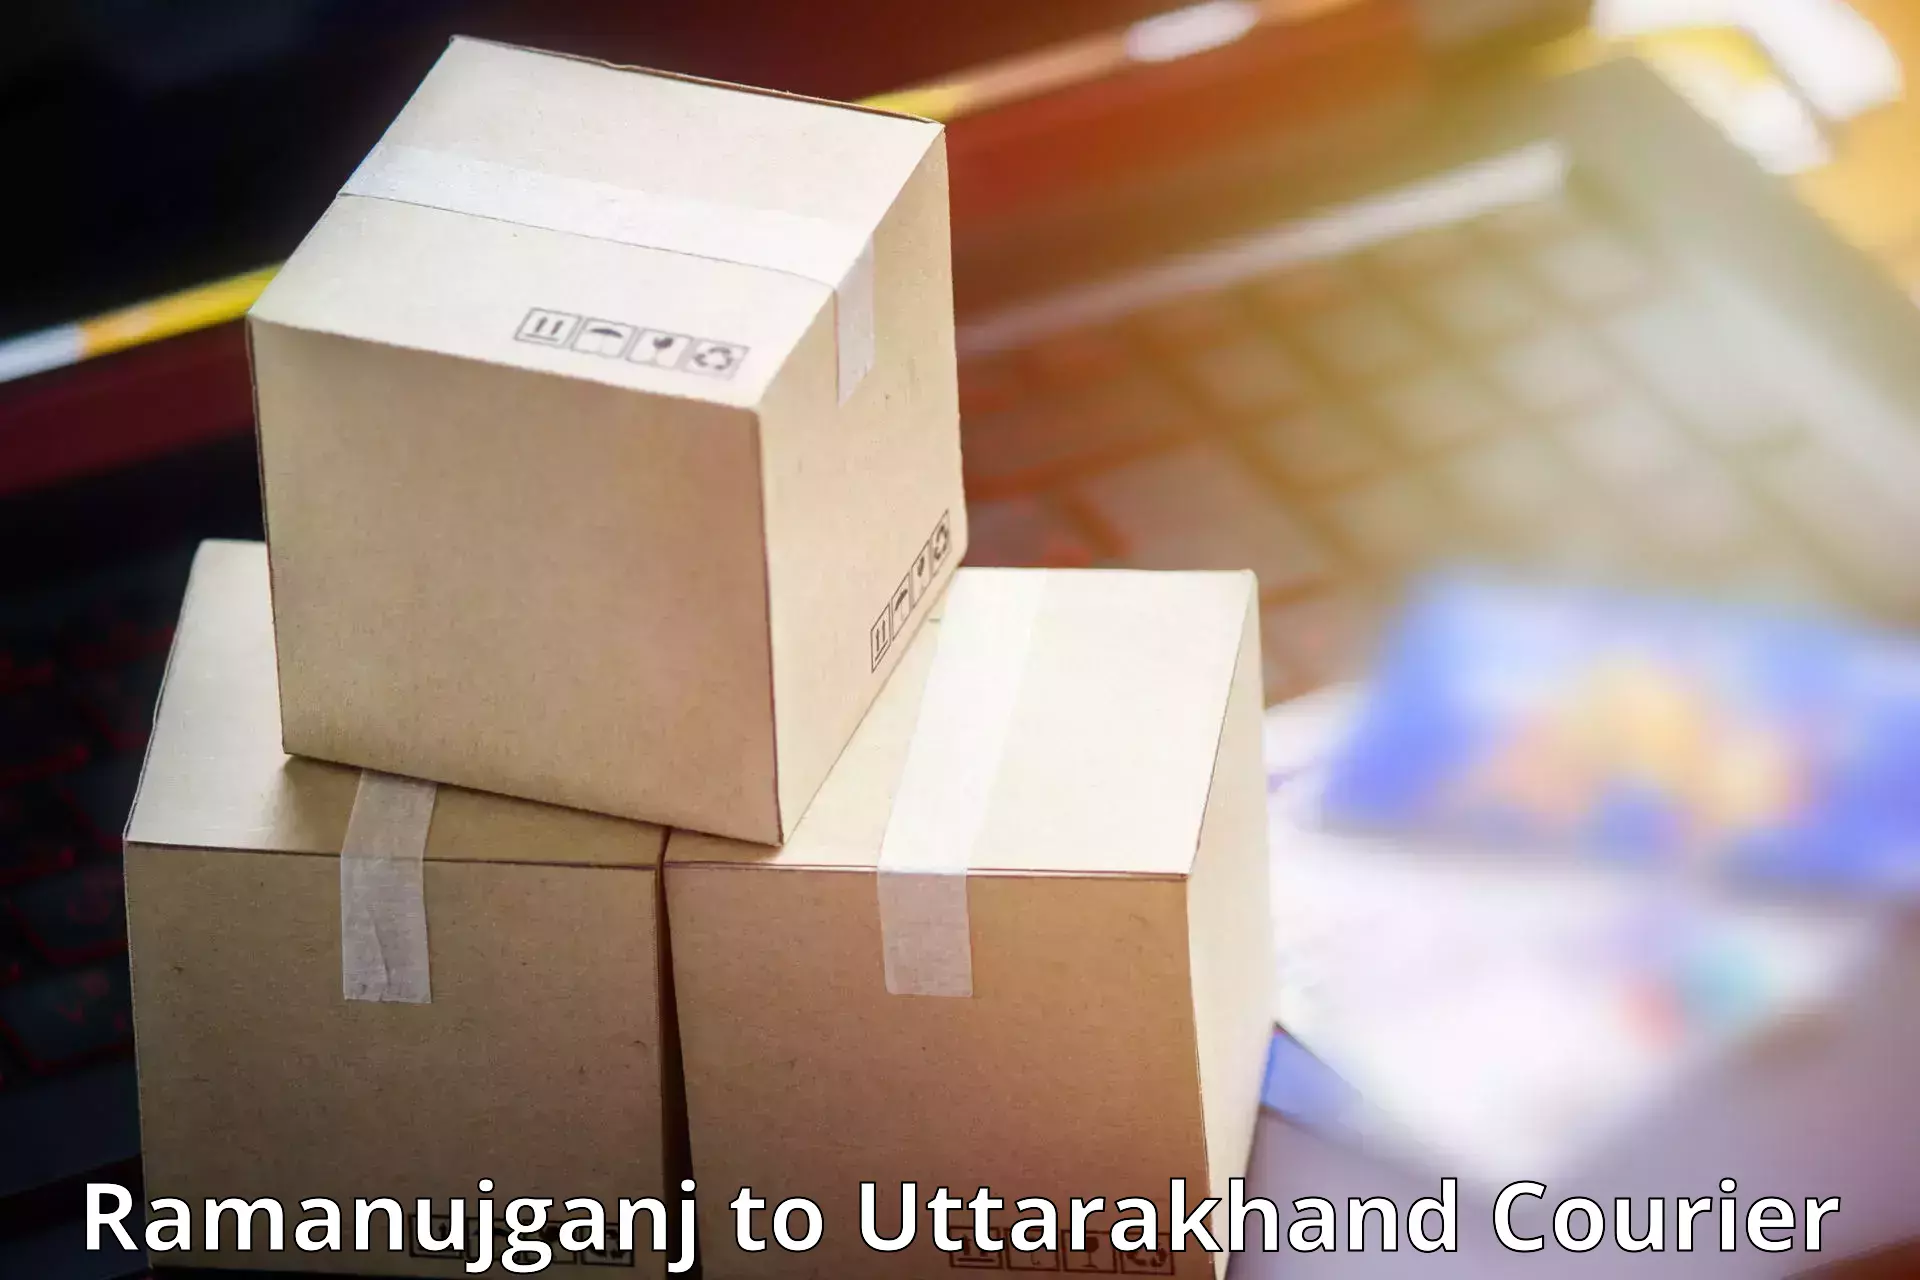 Efficient parcel delivery Ramanujganj to Doiwala